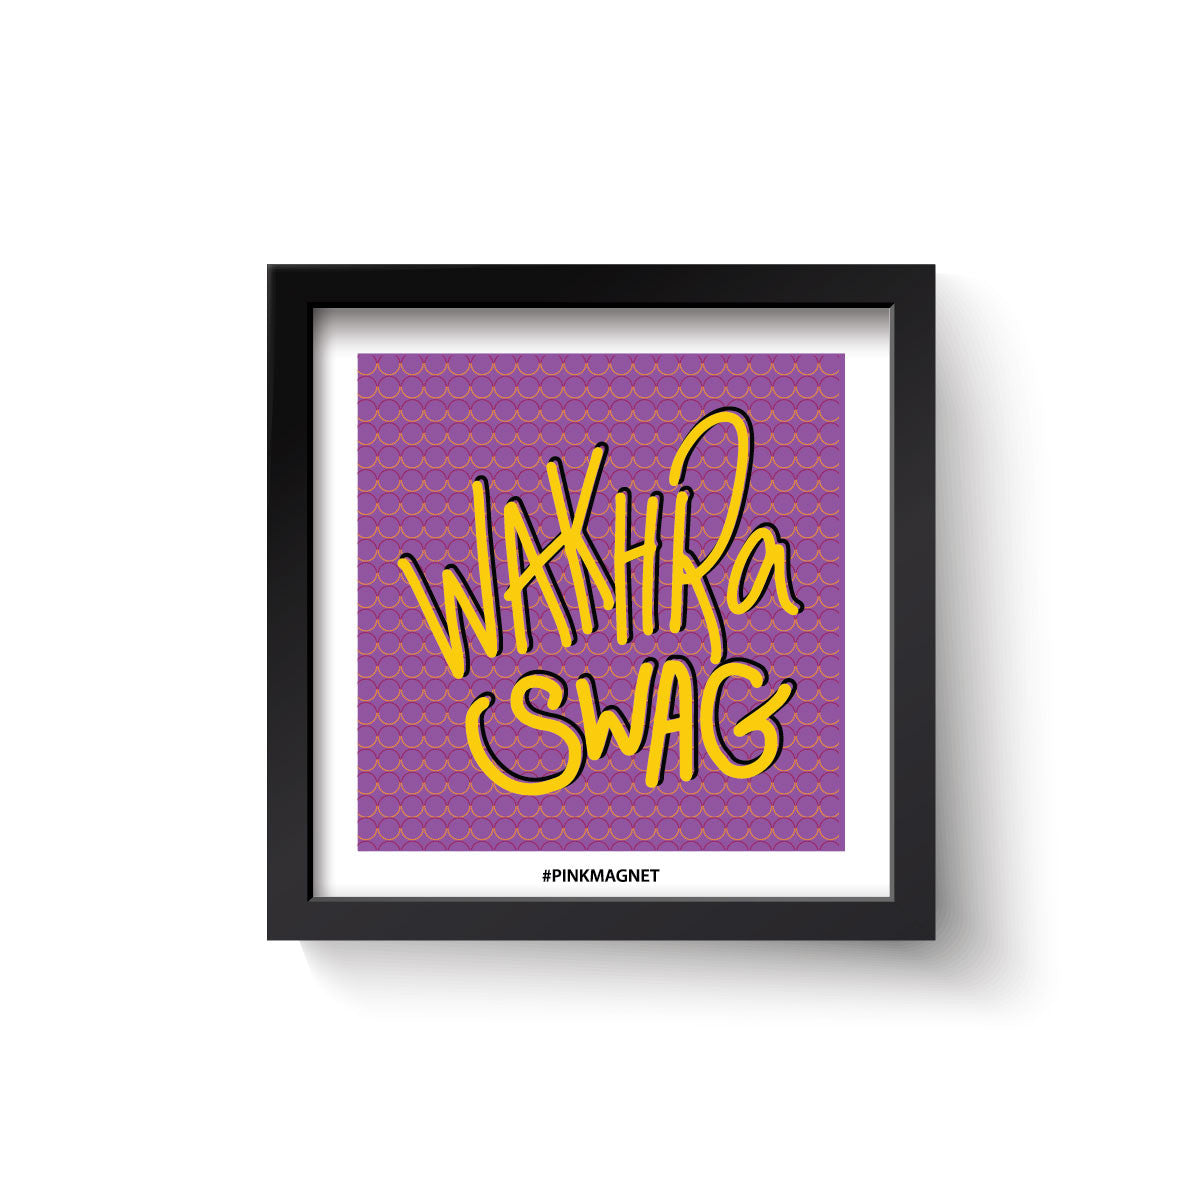 Wakhra Swag - Wall Art